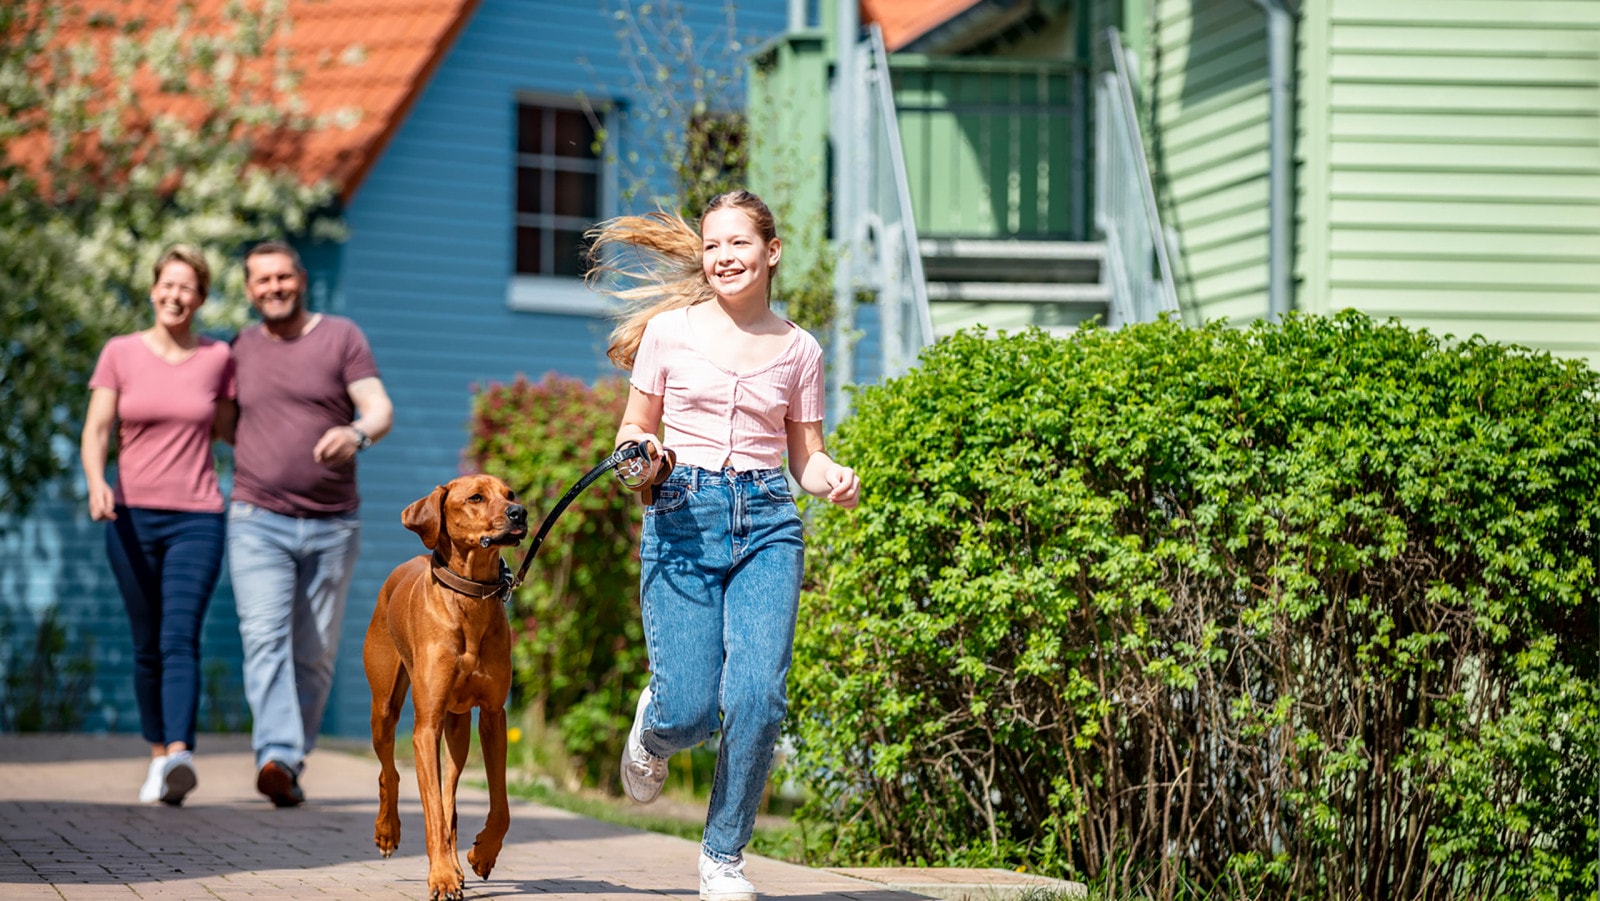 Familie mit Hund beim Apartmenturlaub in Mecklenburg-Vorpommenr